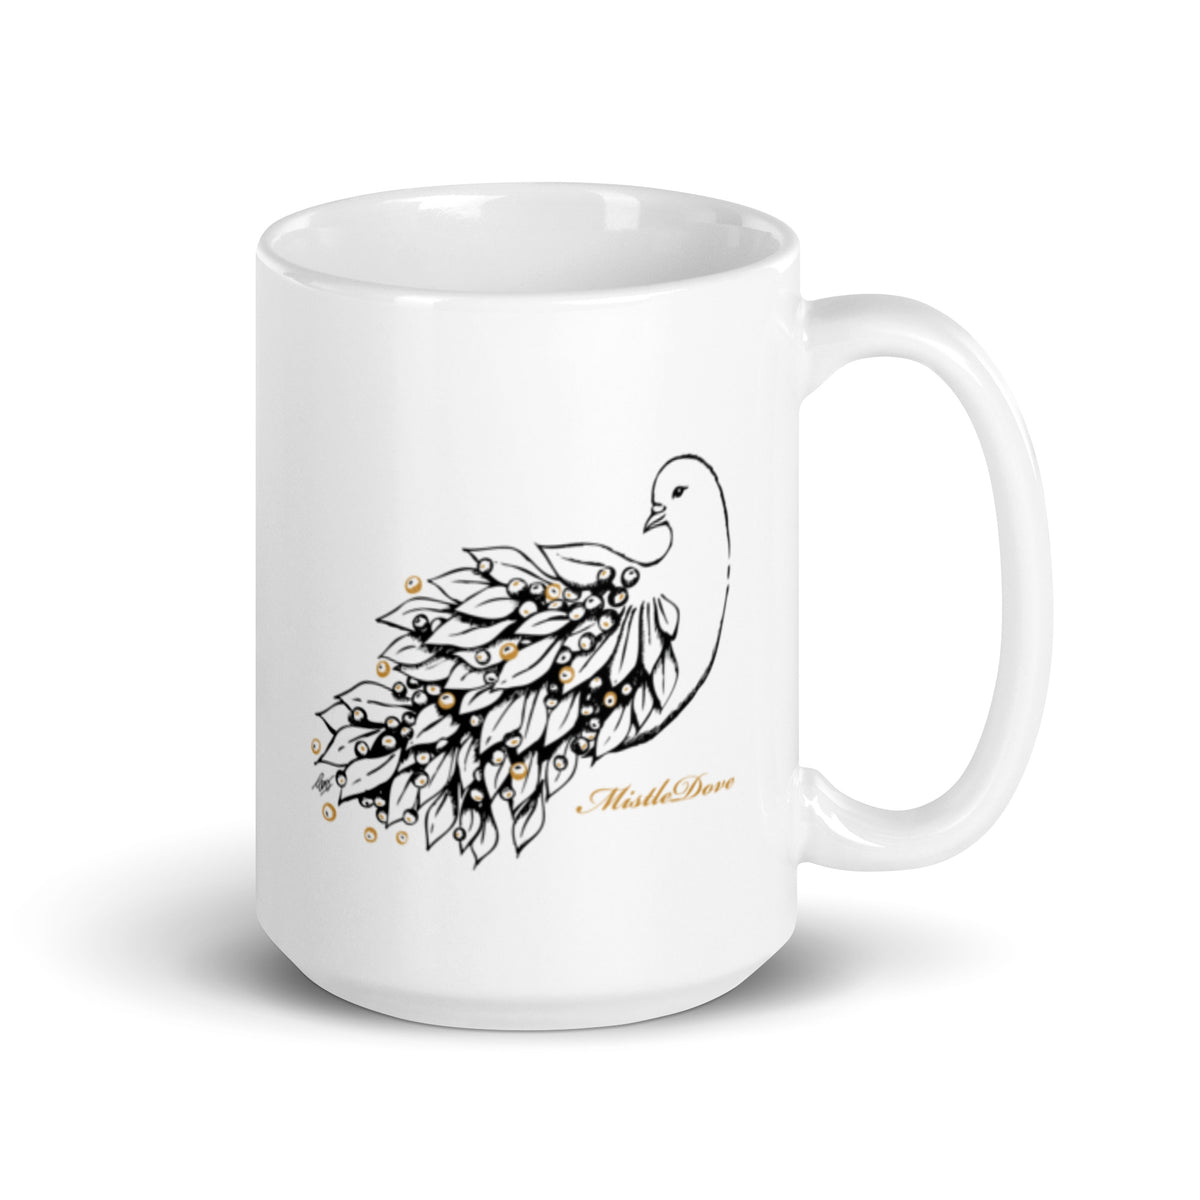 Mistle Dove Inspirational Mug